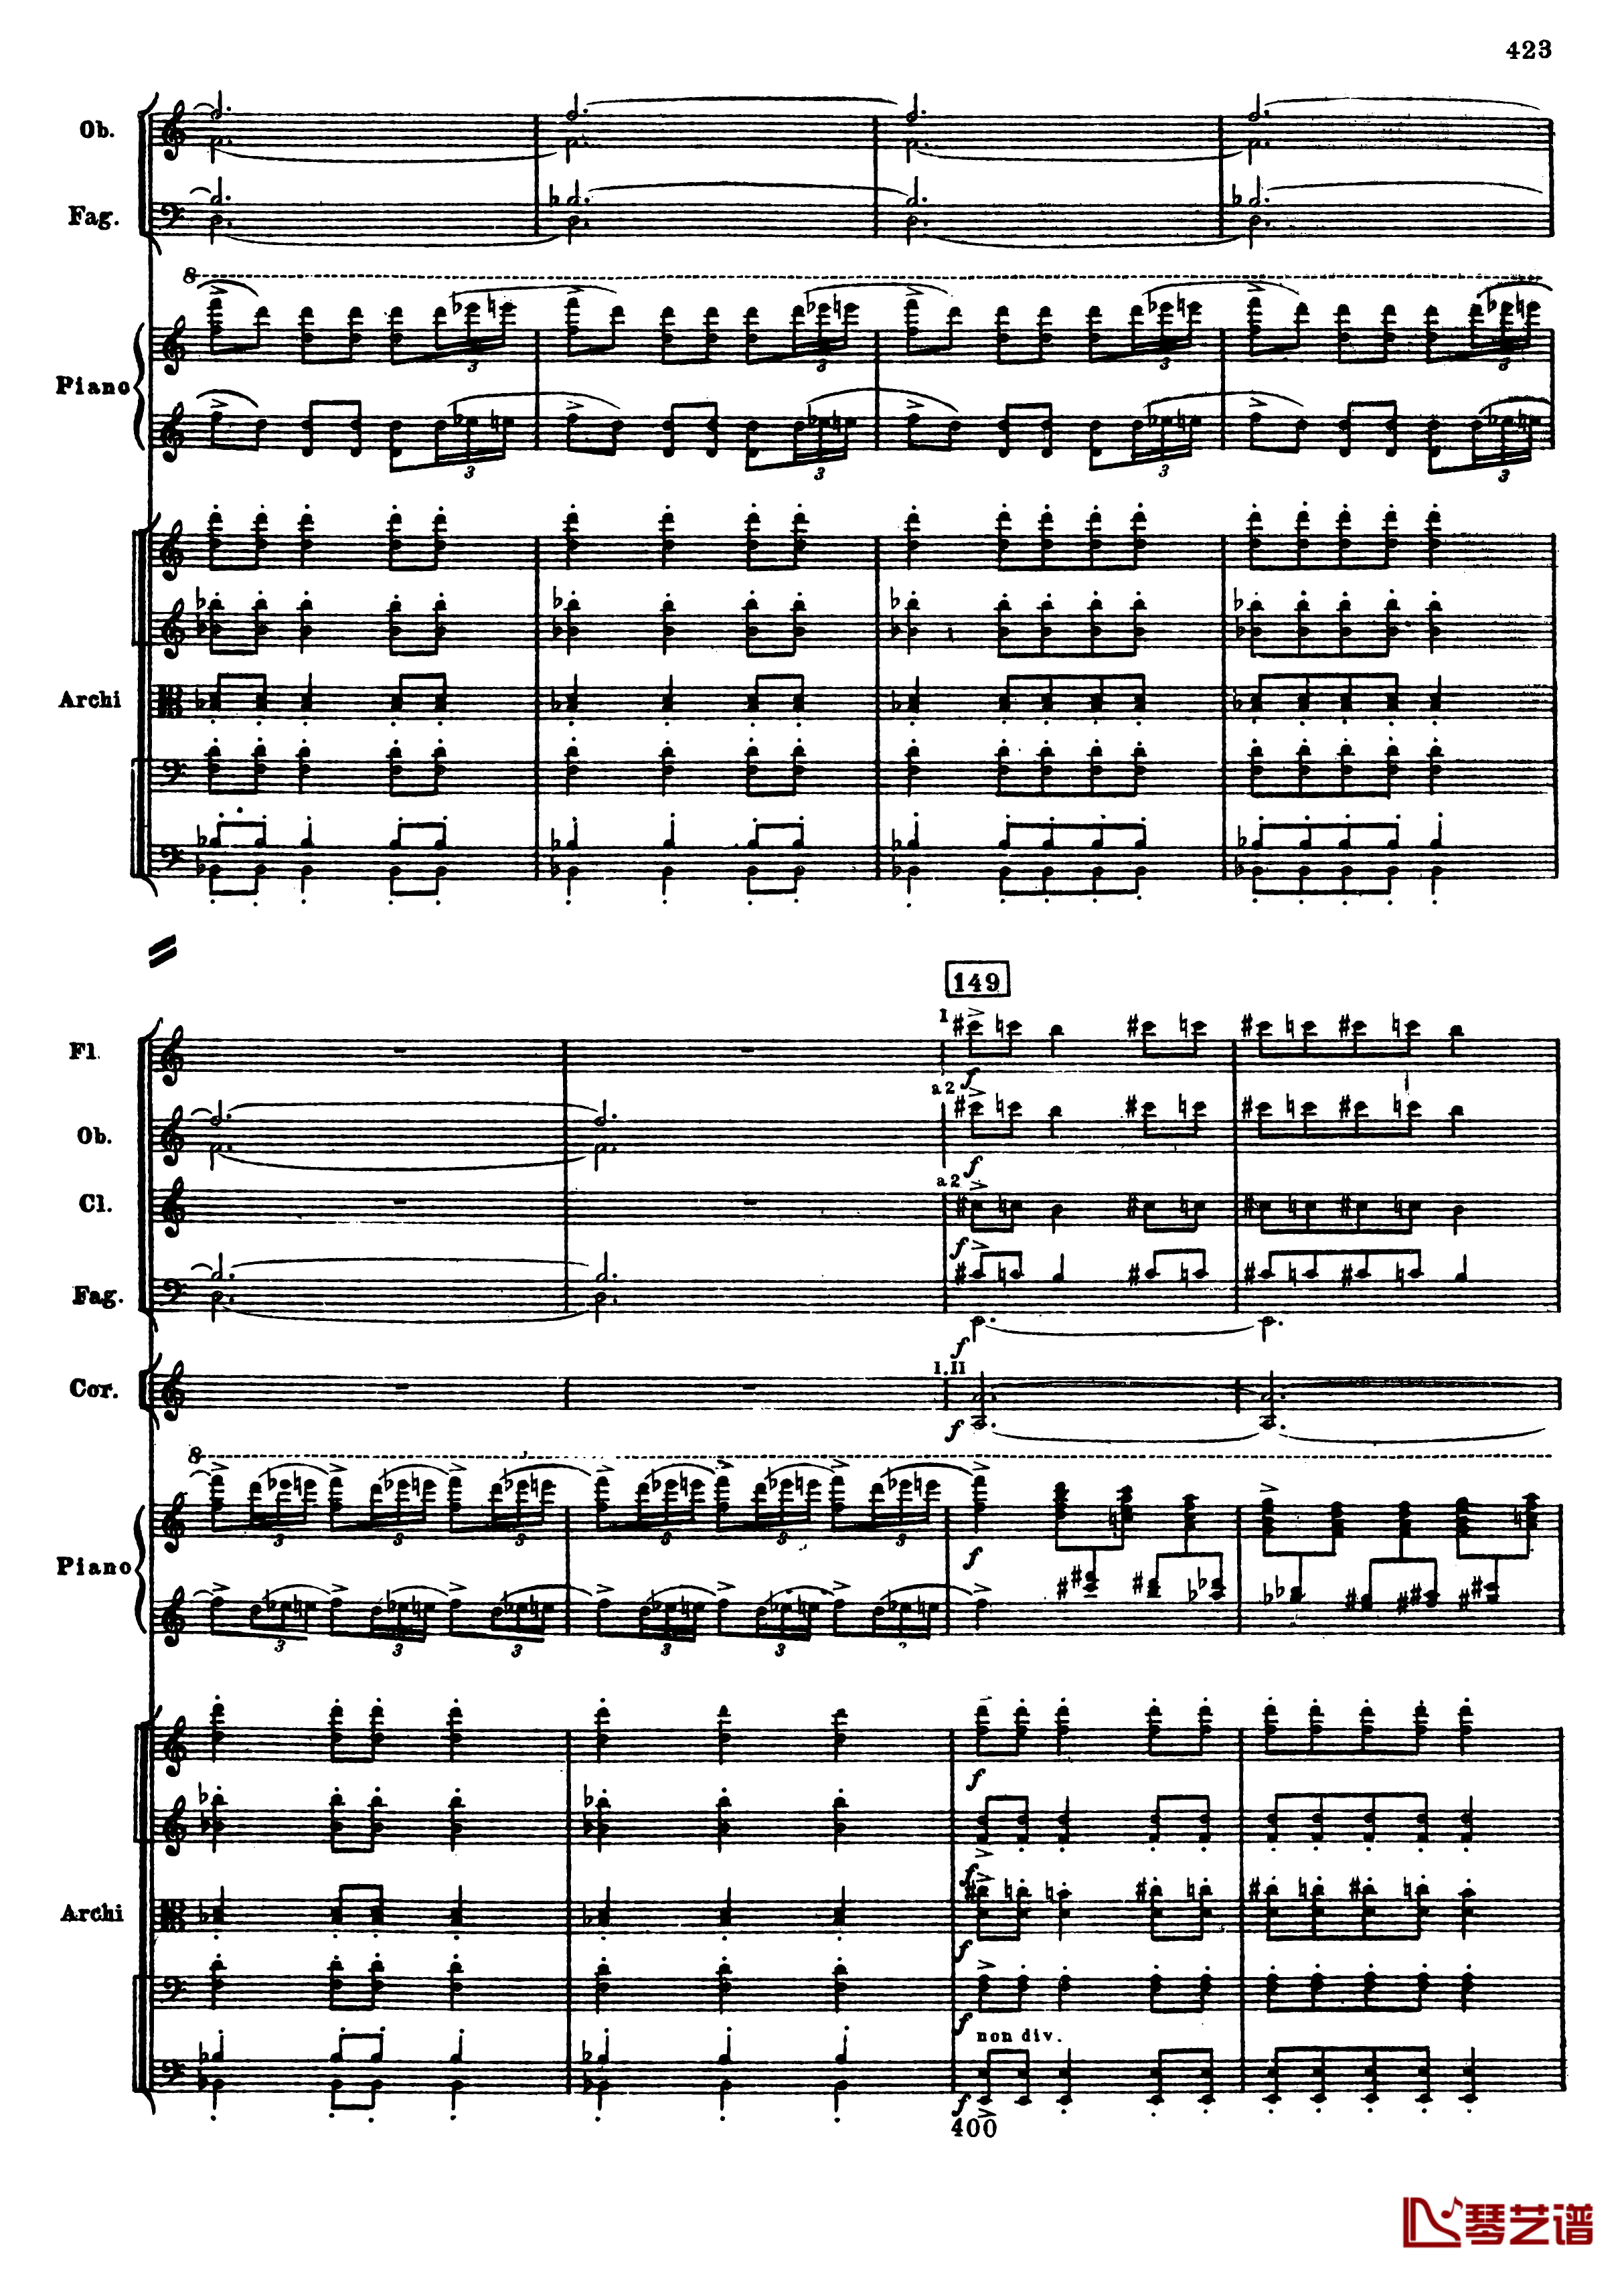 普罗科菲耶夫第三钢琴协奏曲钢琴谱-总谱-普罗科非耶夫155